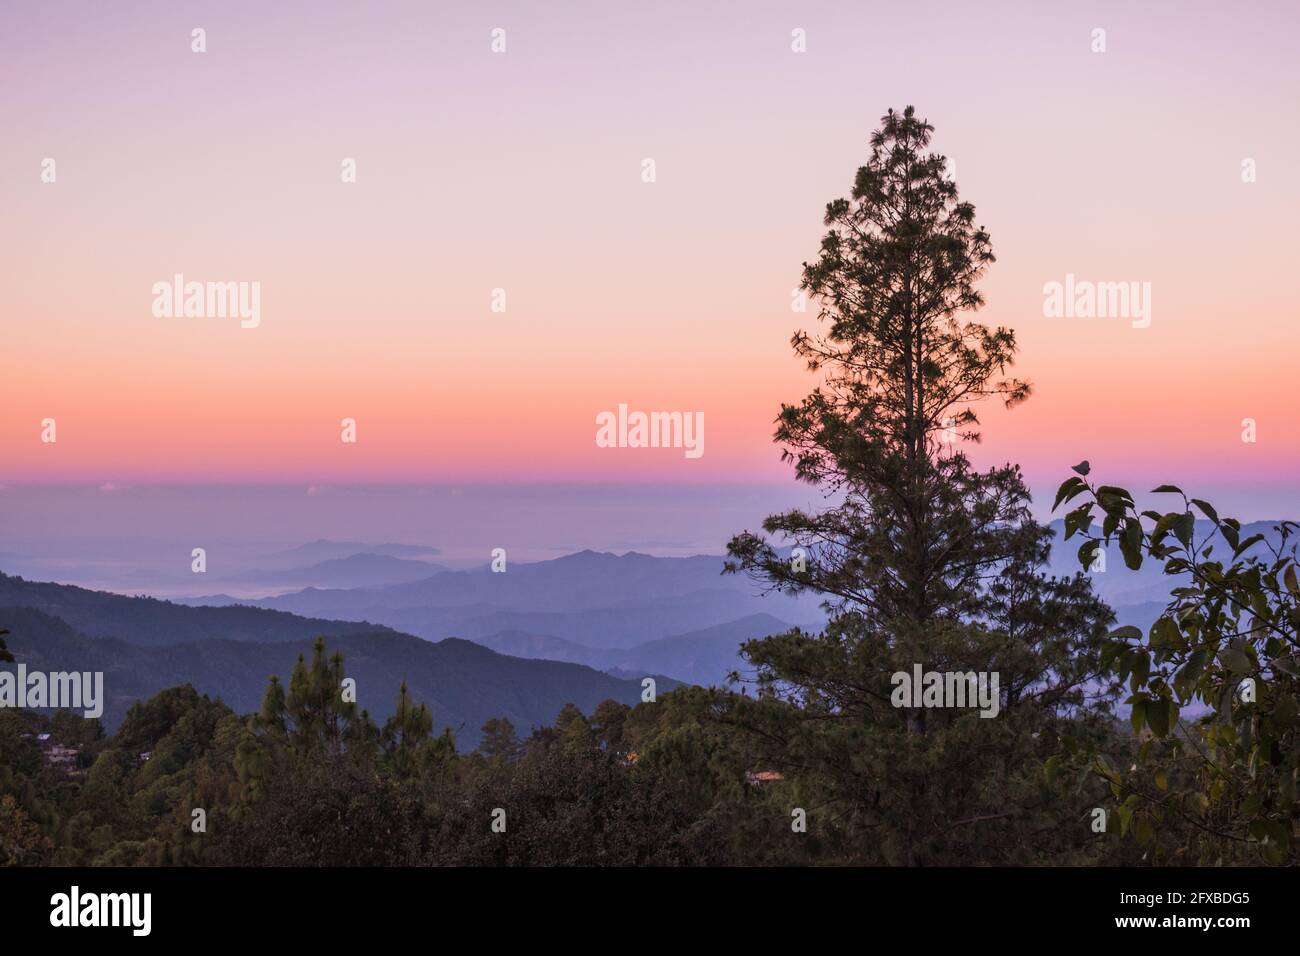 Salida del sol sobre San José del Pacífico. Un claro cielo púrpura, rosa y naranja sobre montañas onduladas, detrás de un pino y un bosque montano. Foto de stock